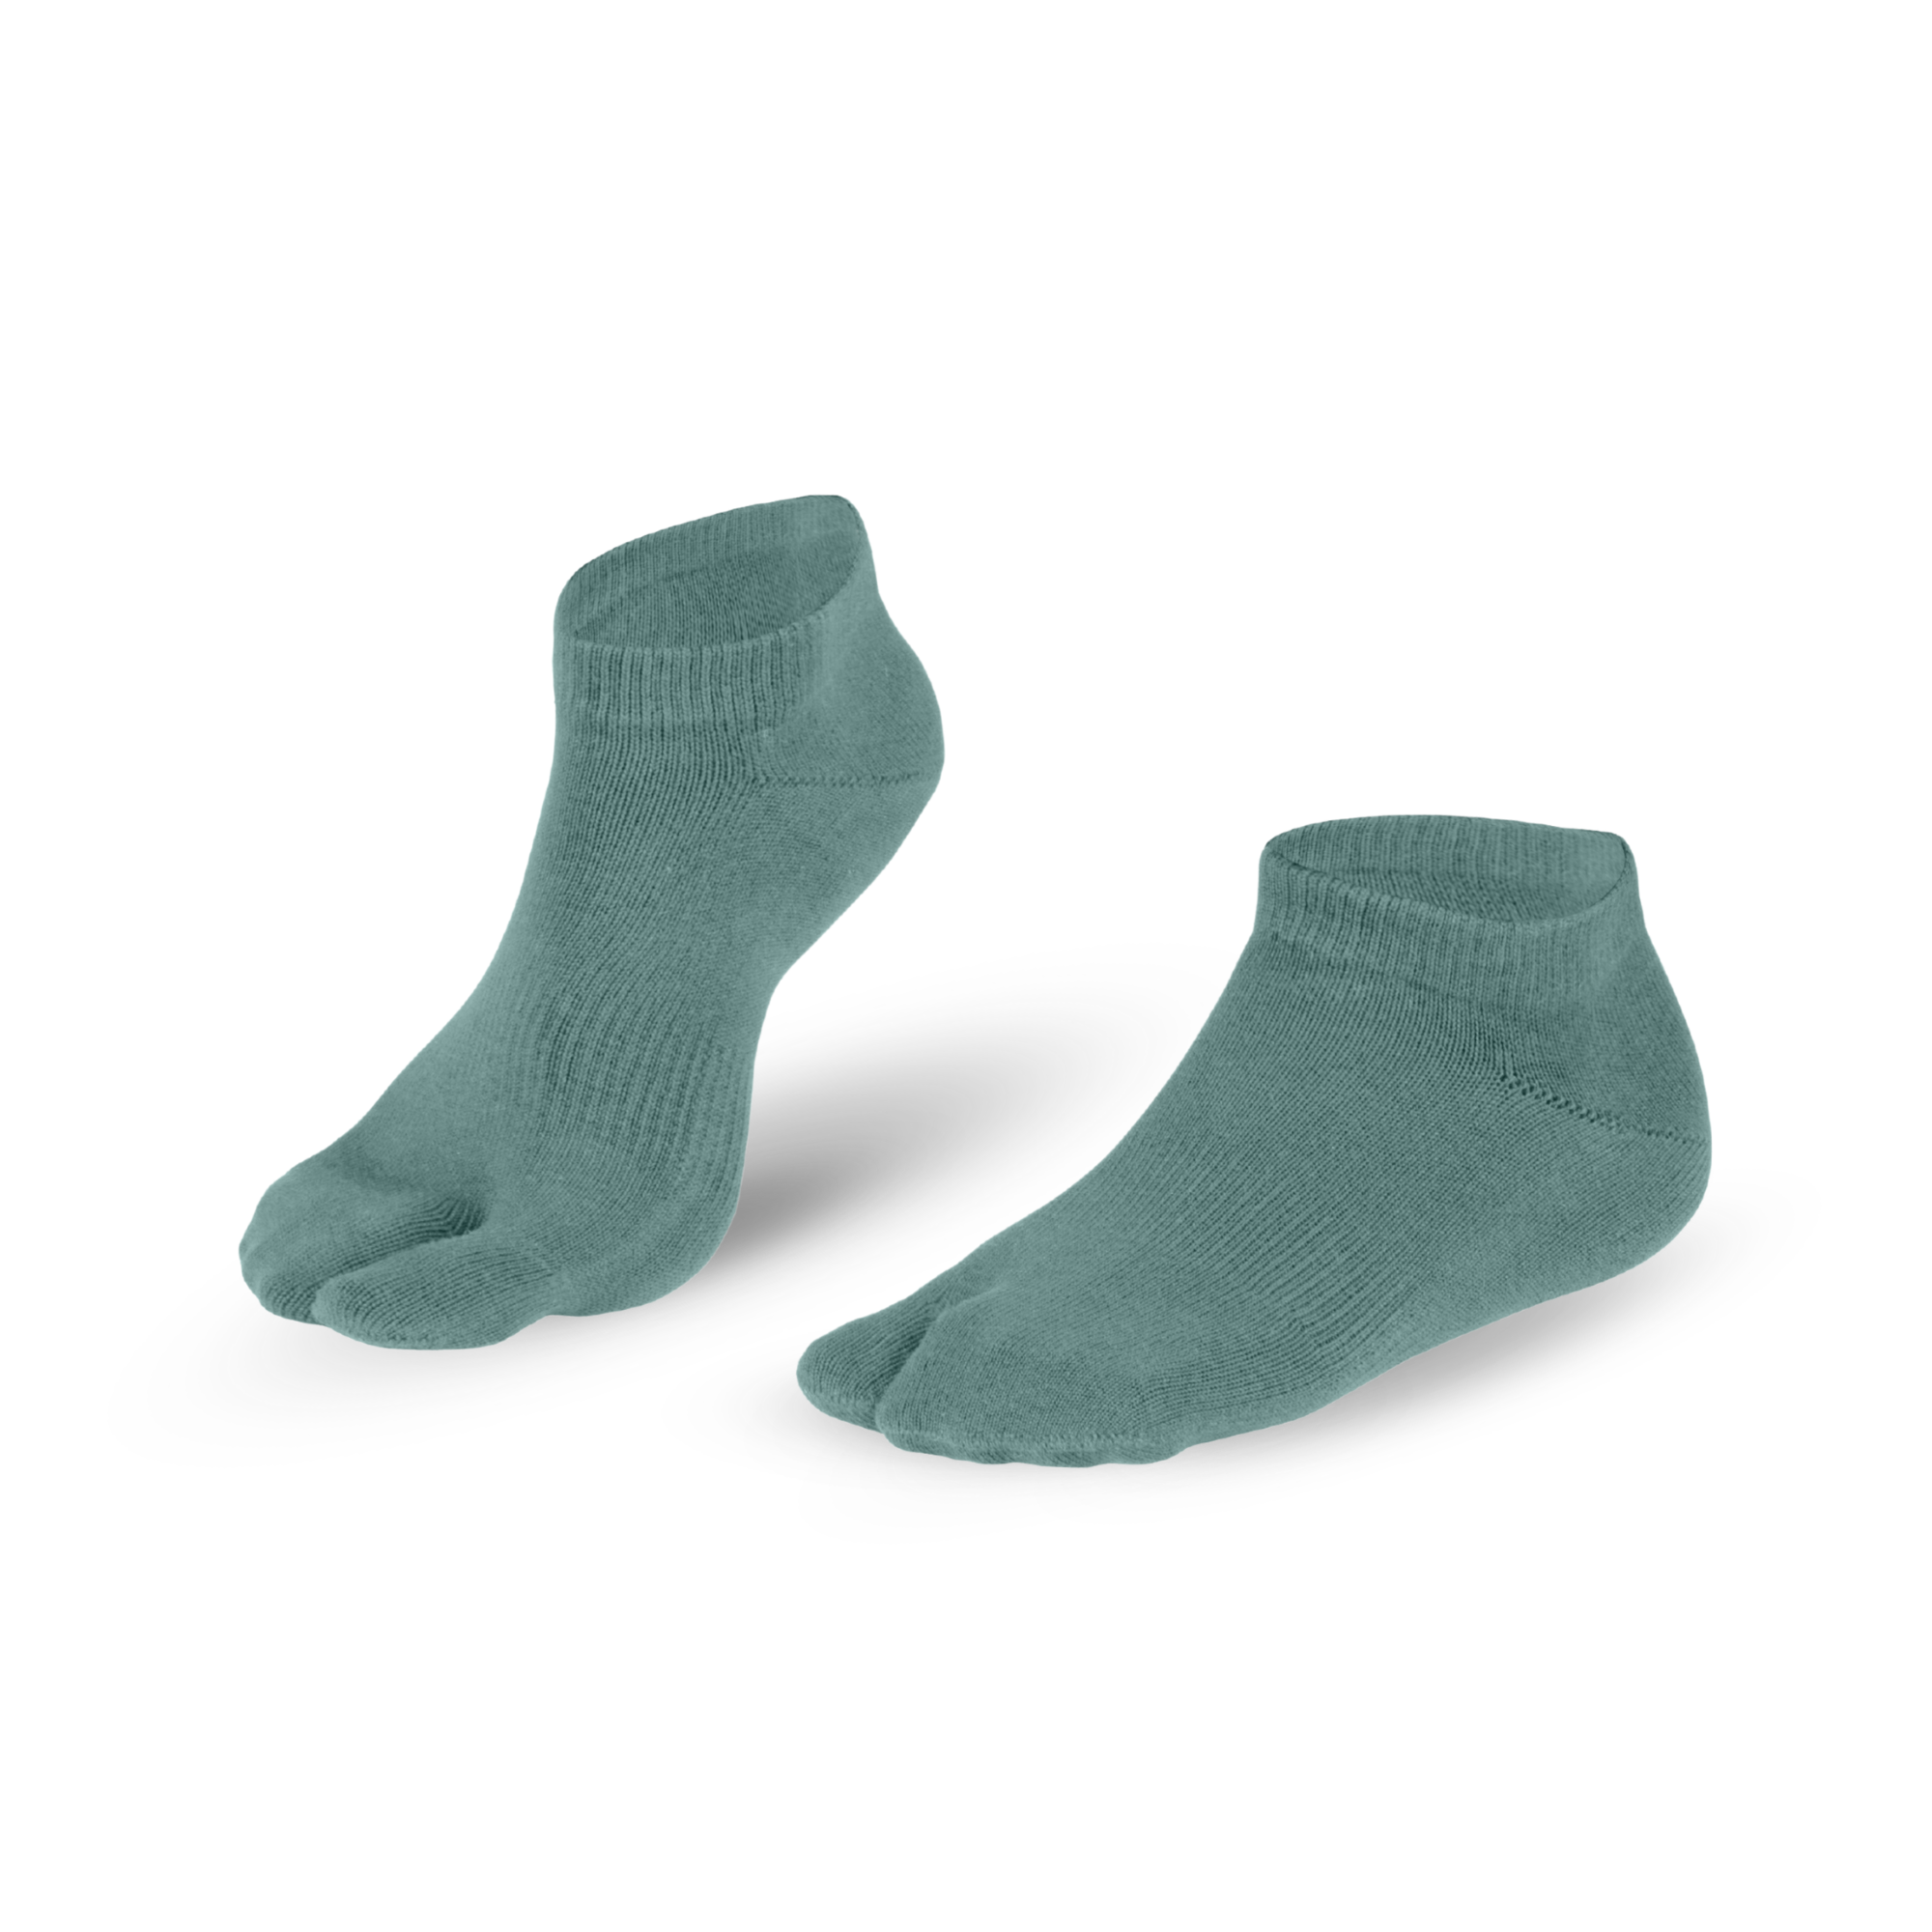 Knitido Tabi Socks Sneaker, chaussettes courtes en coton avec un seul gros orteil gris-bleu